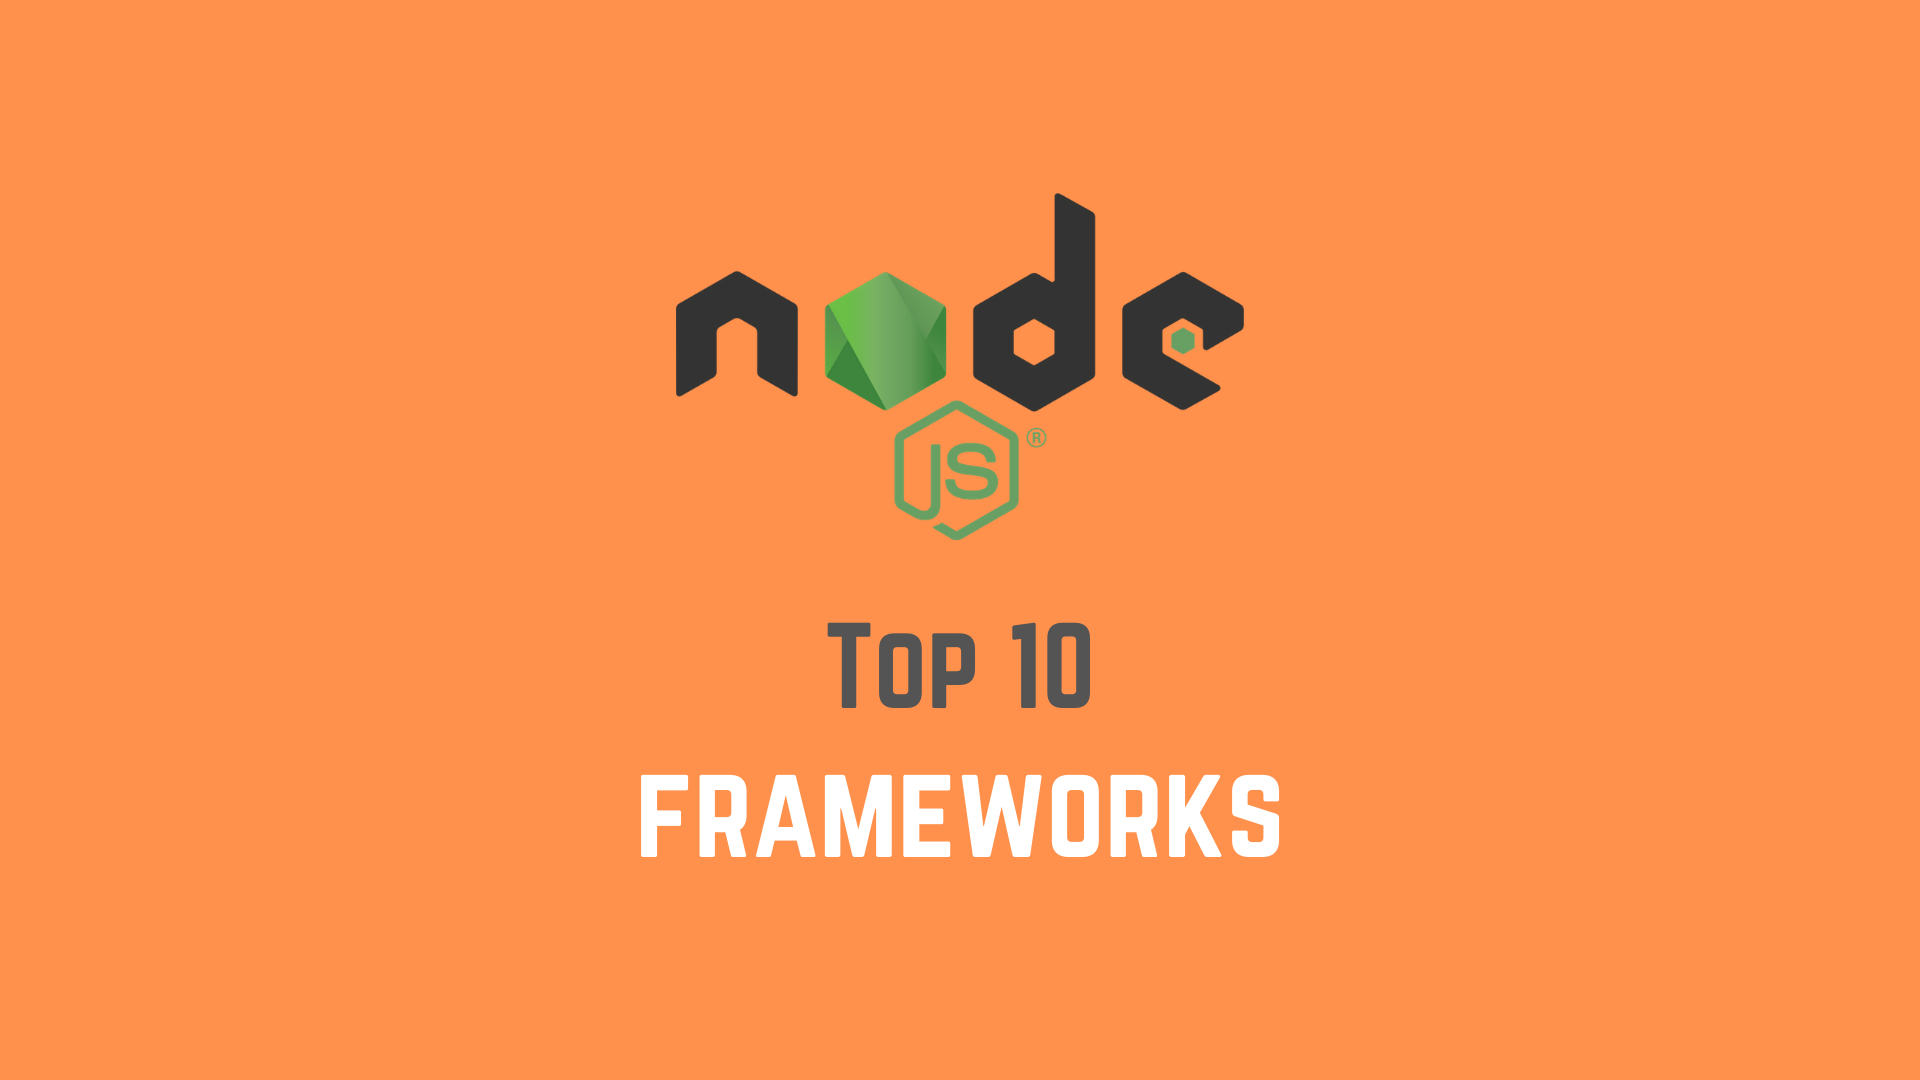 Top 10 Nodejs frameworks for 2021